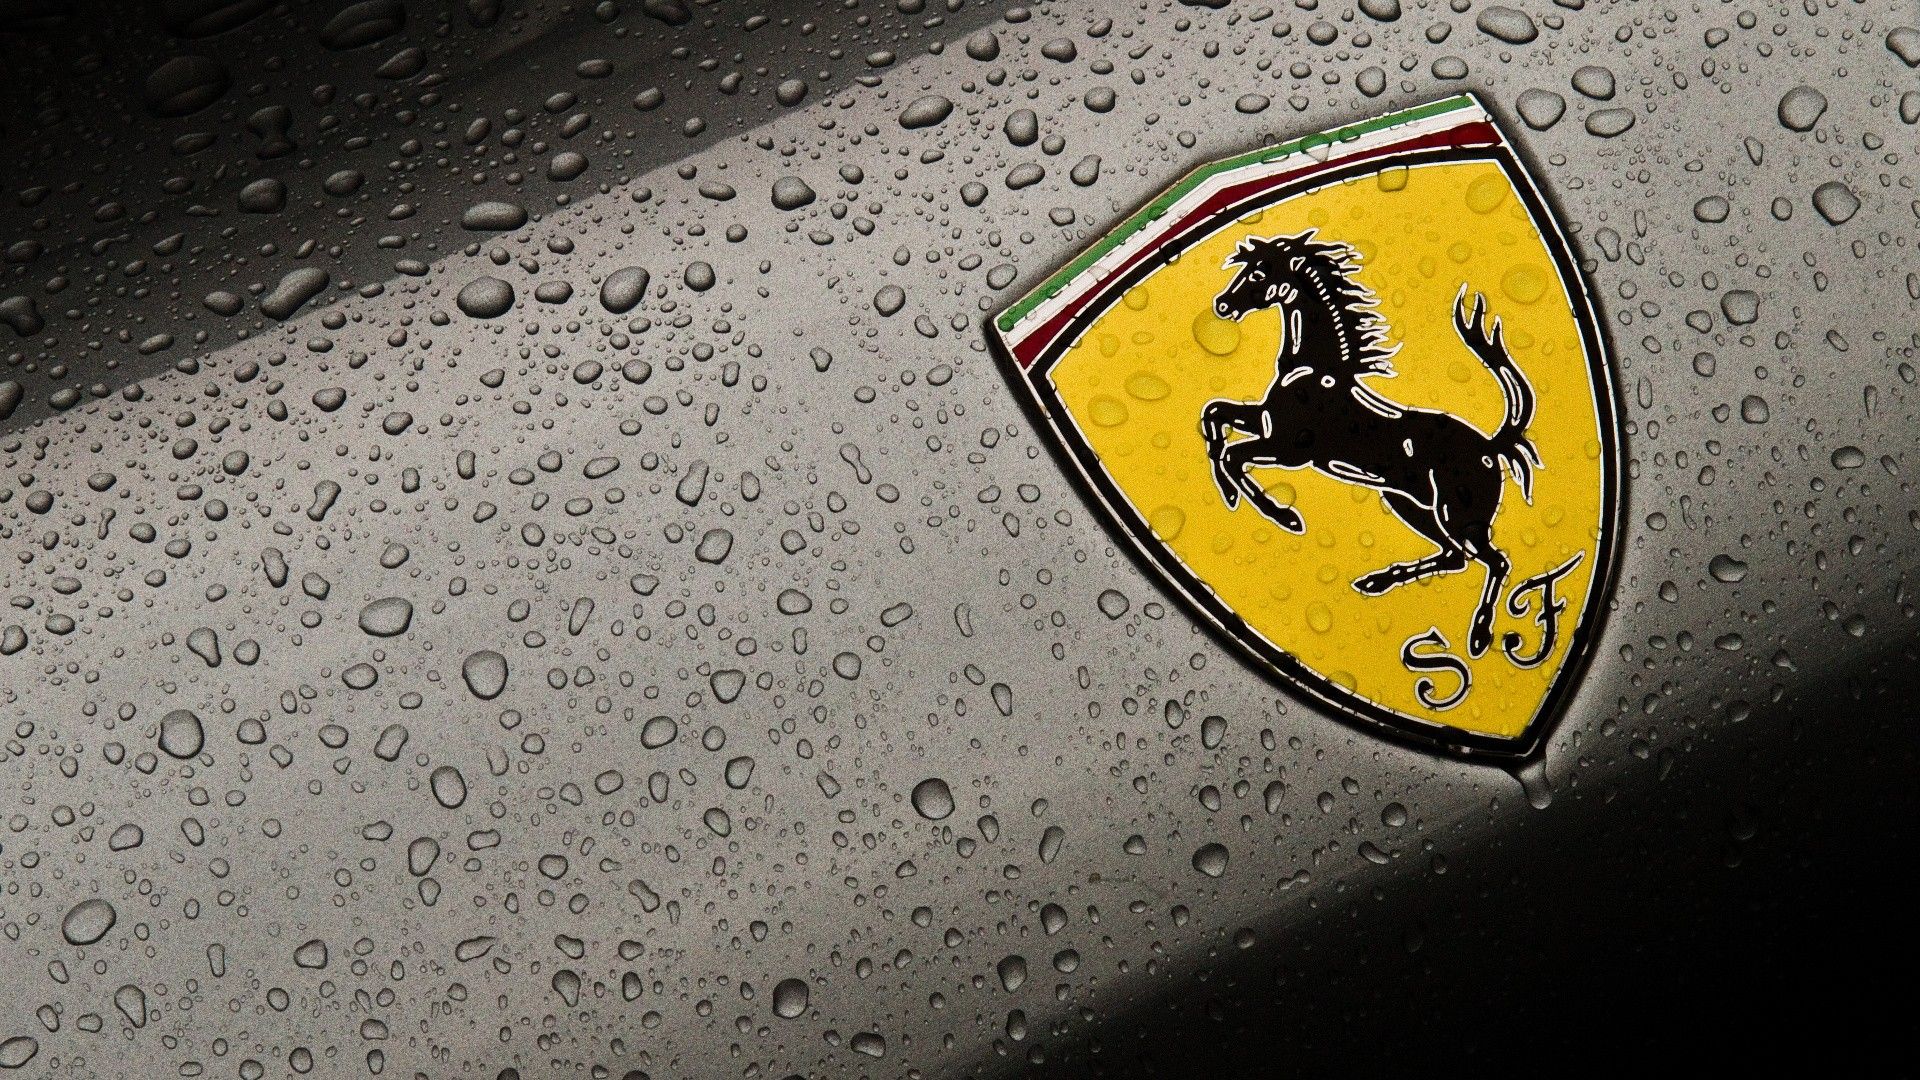 Ferrari Logo Wallpaper For Mobile - image #253